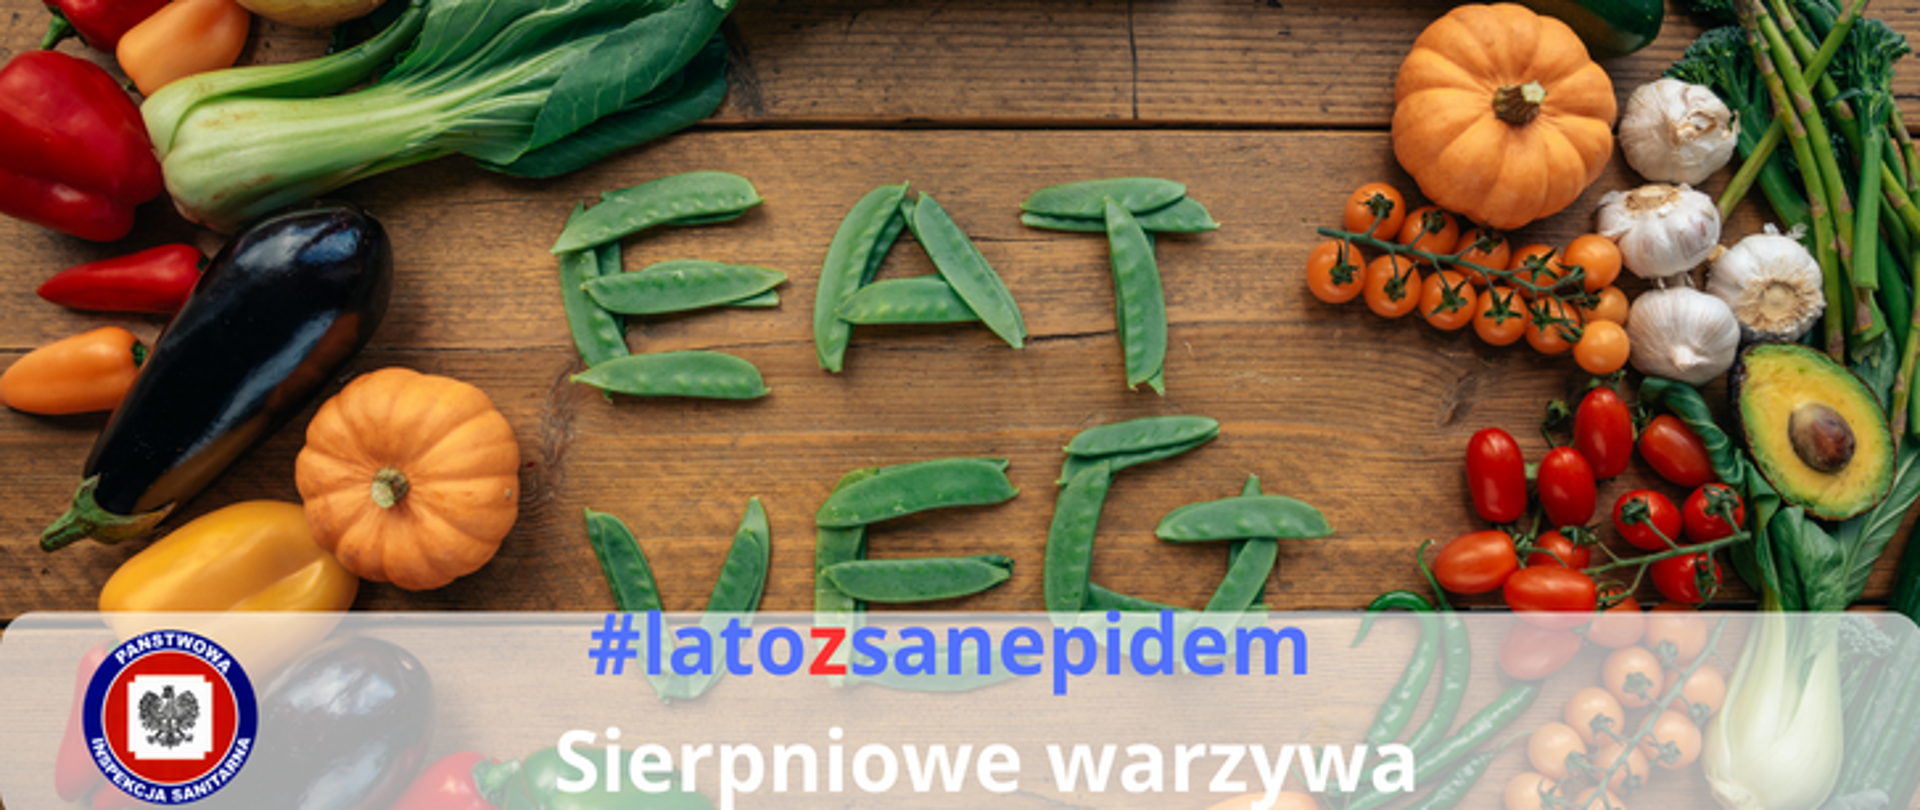 Na fotografii widoczne warzywa - bakłażan, dynia, pomidory, szparagi, awokado, papryka - ułożone na stole. Na dole widoczne logo Państwowej Inspekcji Sanitarnej oraz napis #latozsanepidem Sierpniowe warzywa. 